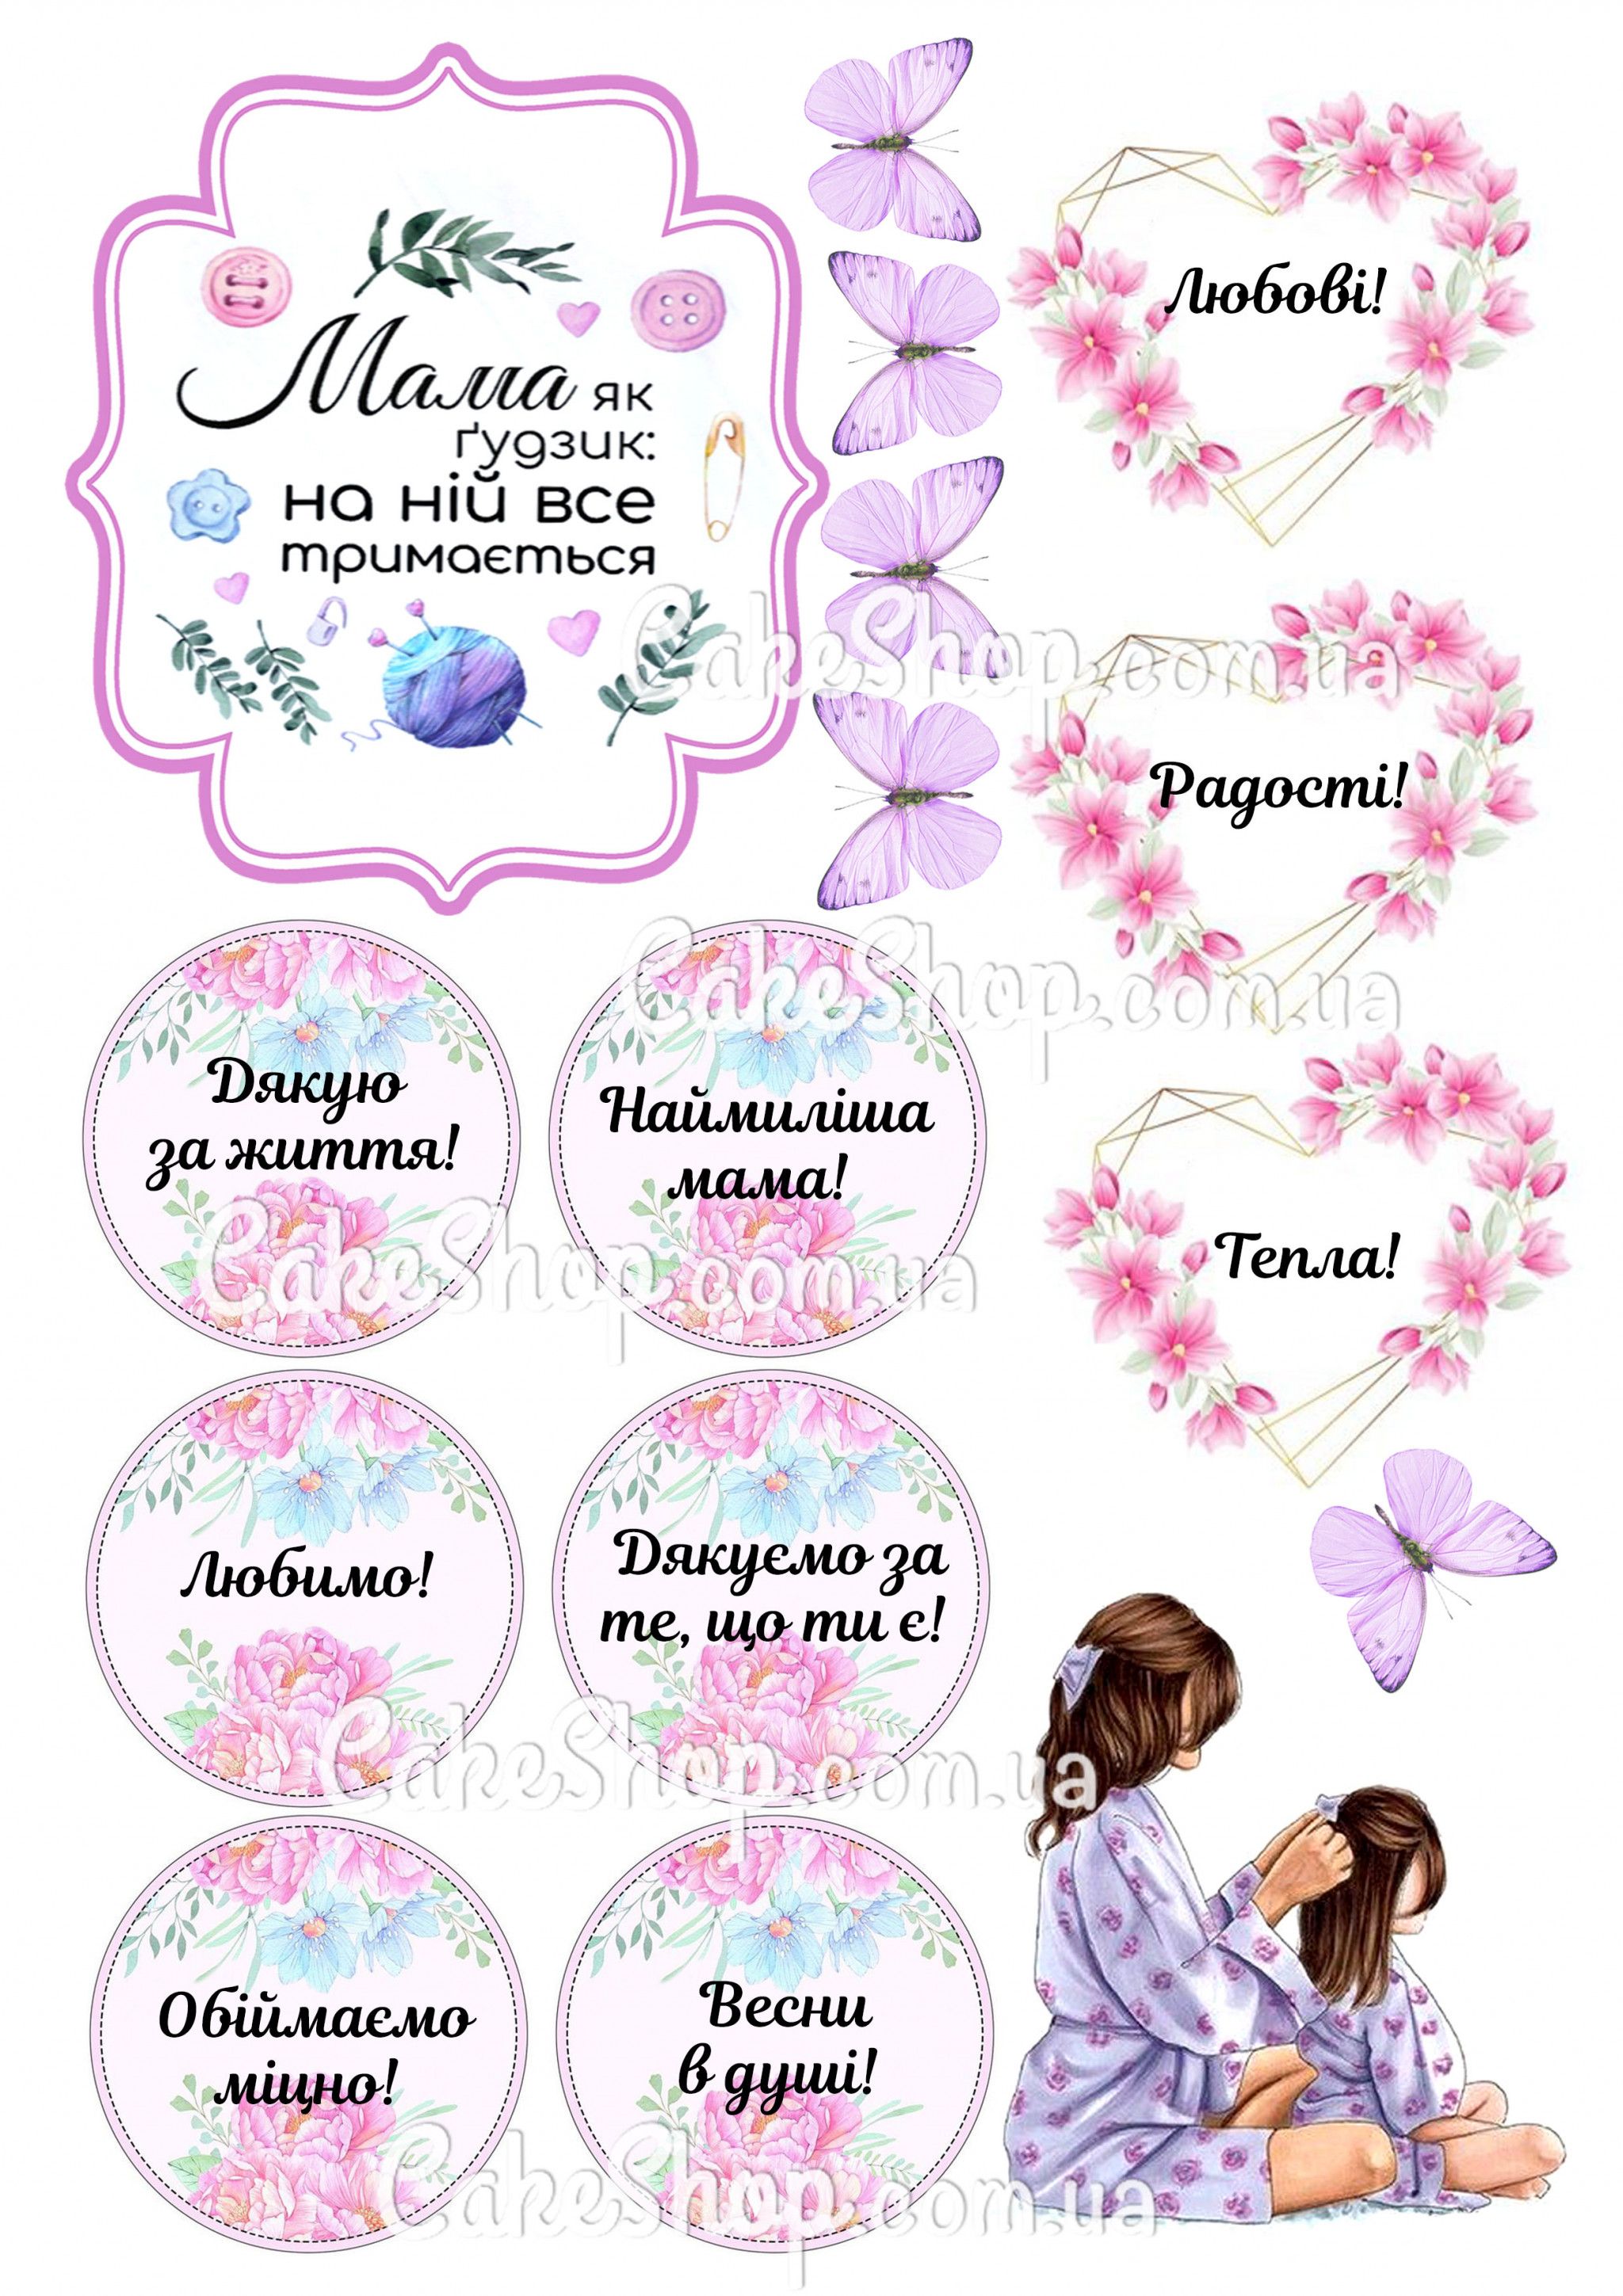 ⋗ Вафельная картинка Мама 2 купить в Украине ➛ CakeShop.com.ua, фото